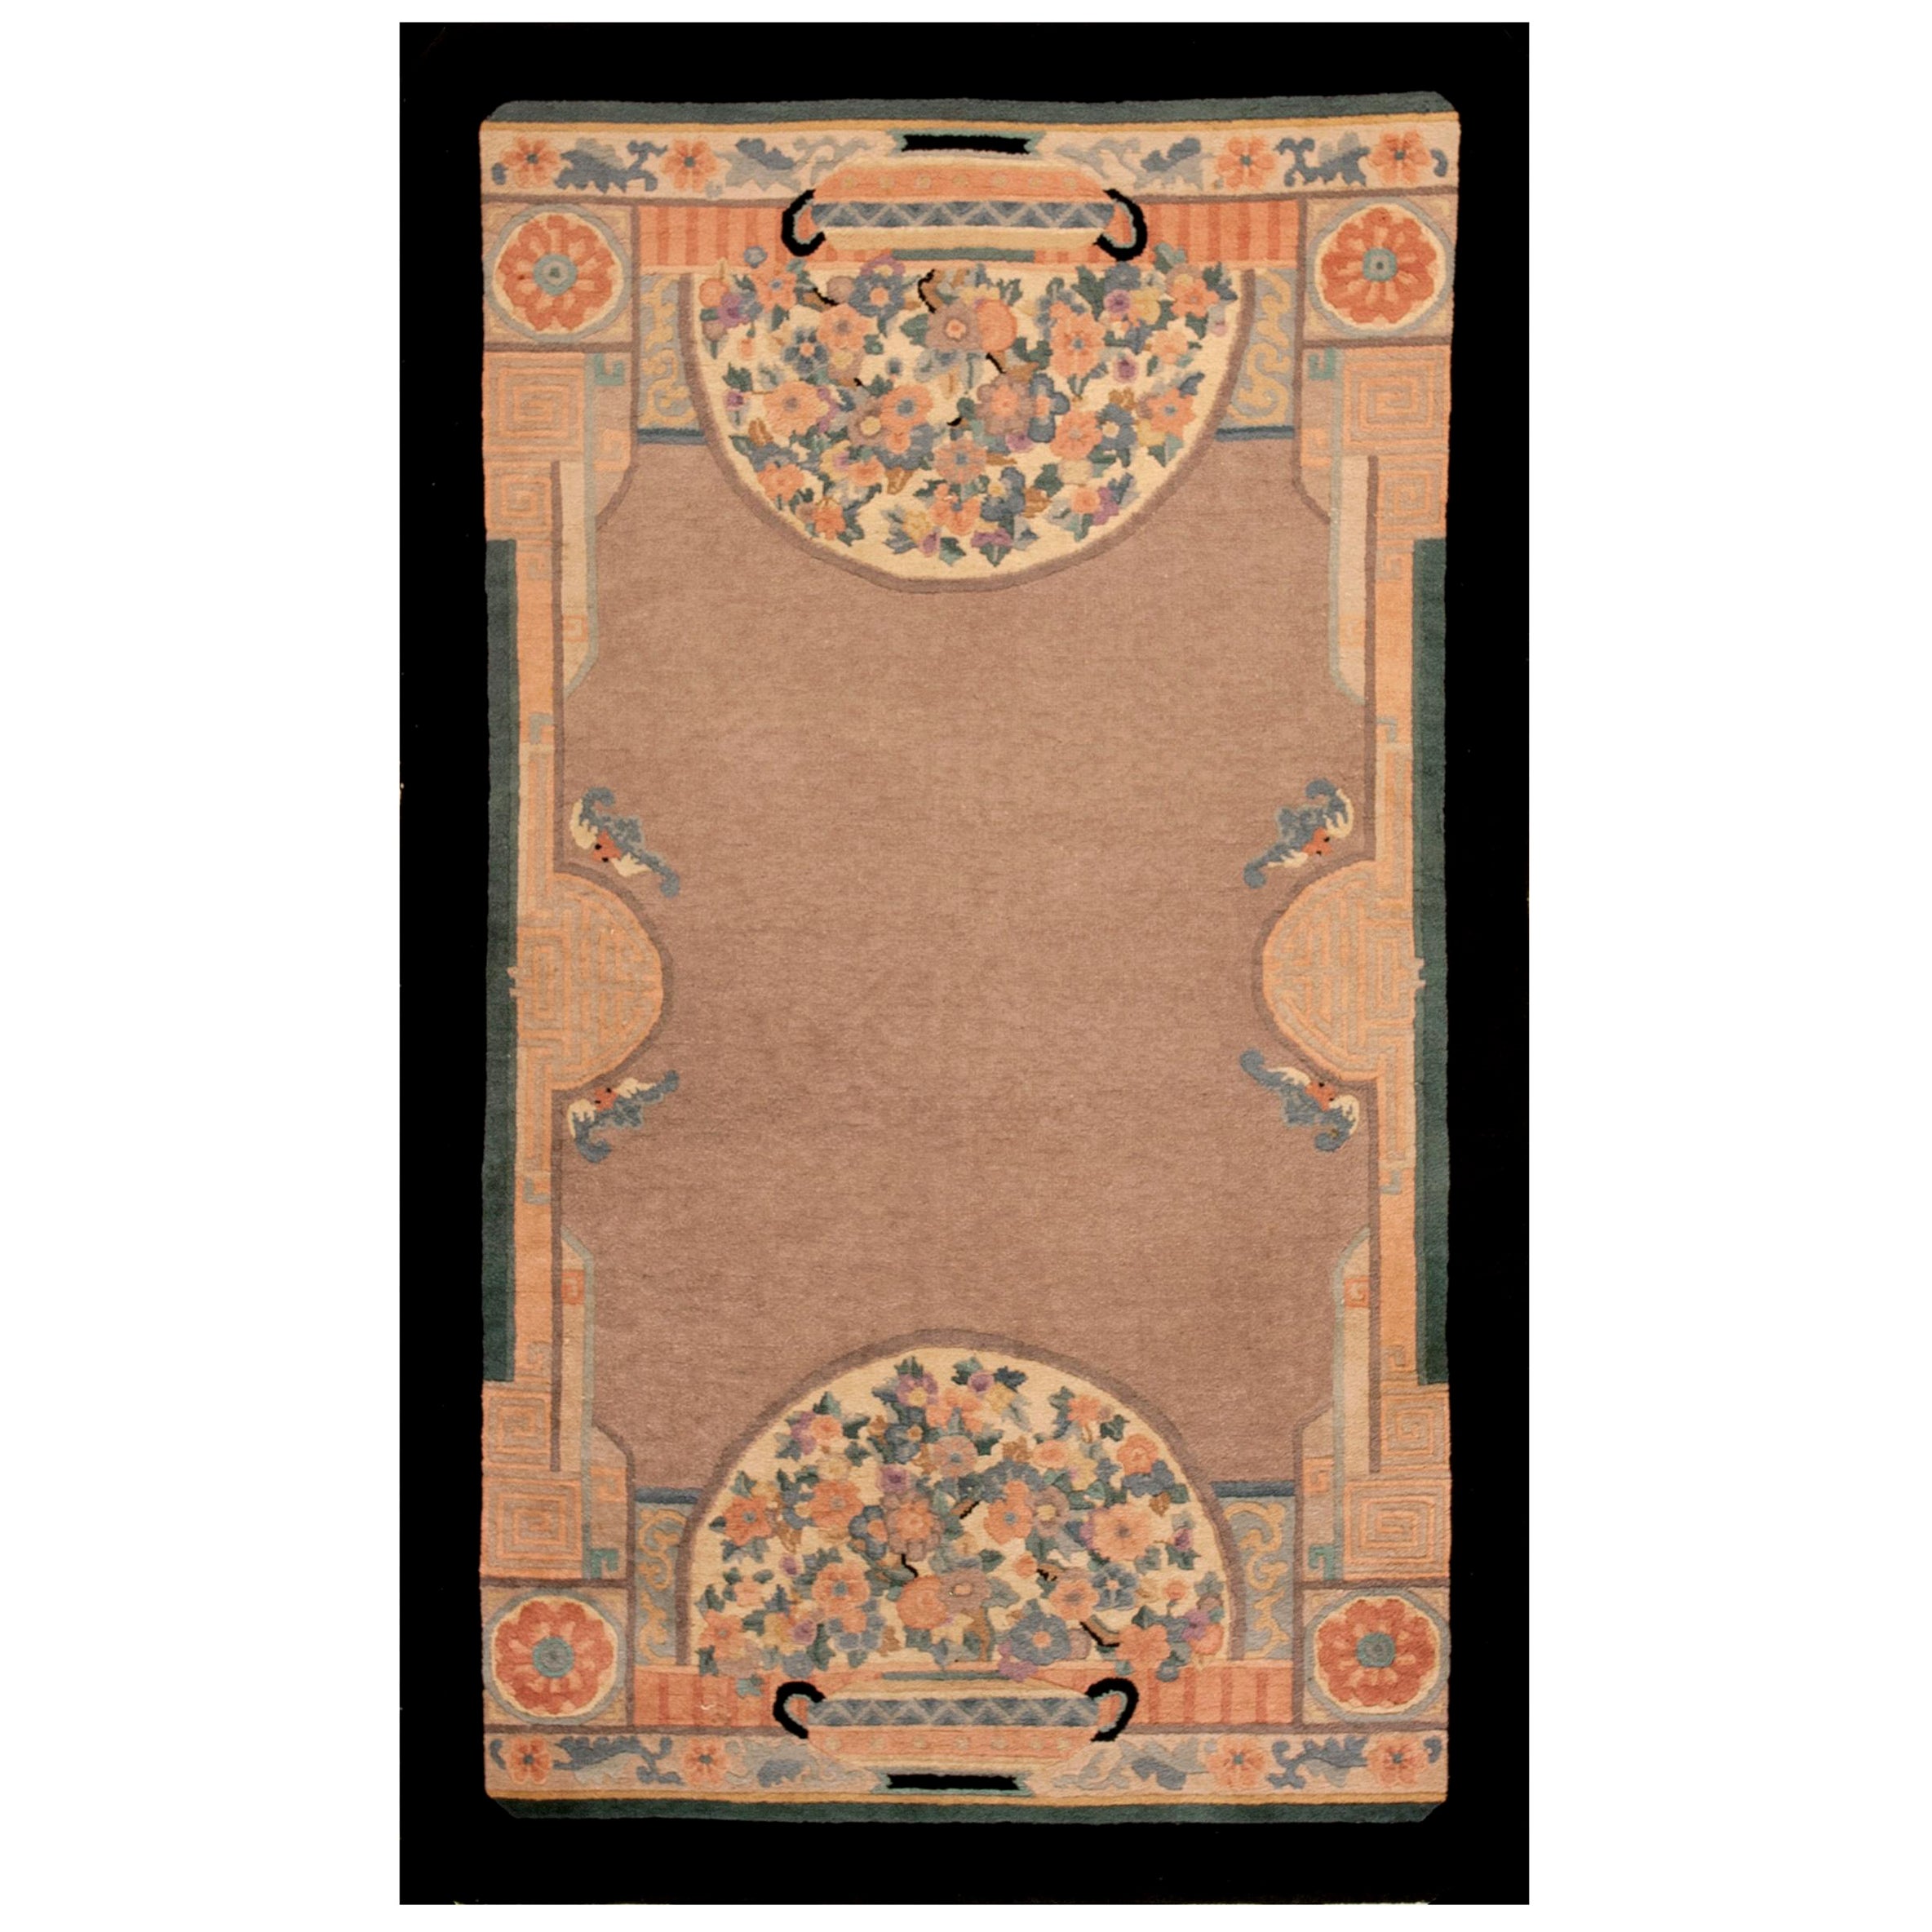 Chinesischer Art-Déco-Teppich aus den 1920er Jahren ( 4'  x 6' 9 Zoll - 122 x 206 cm )